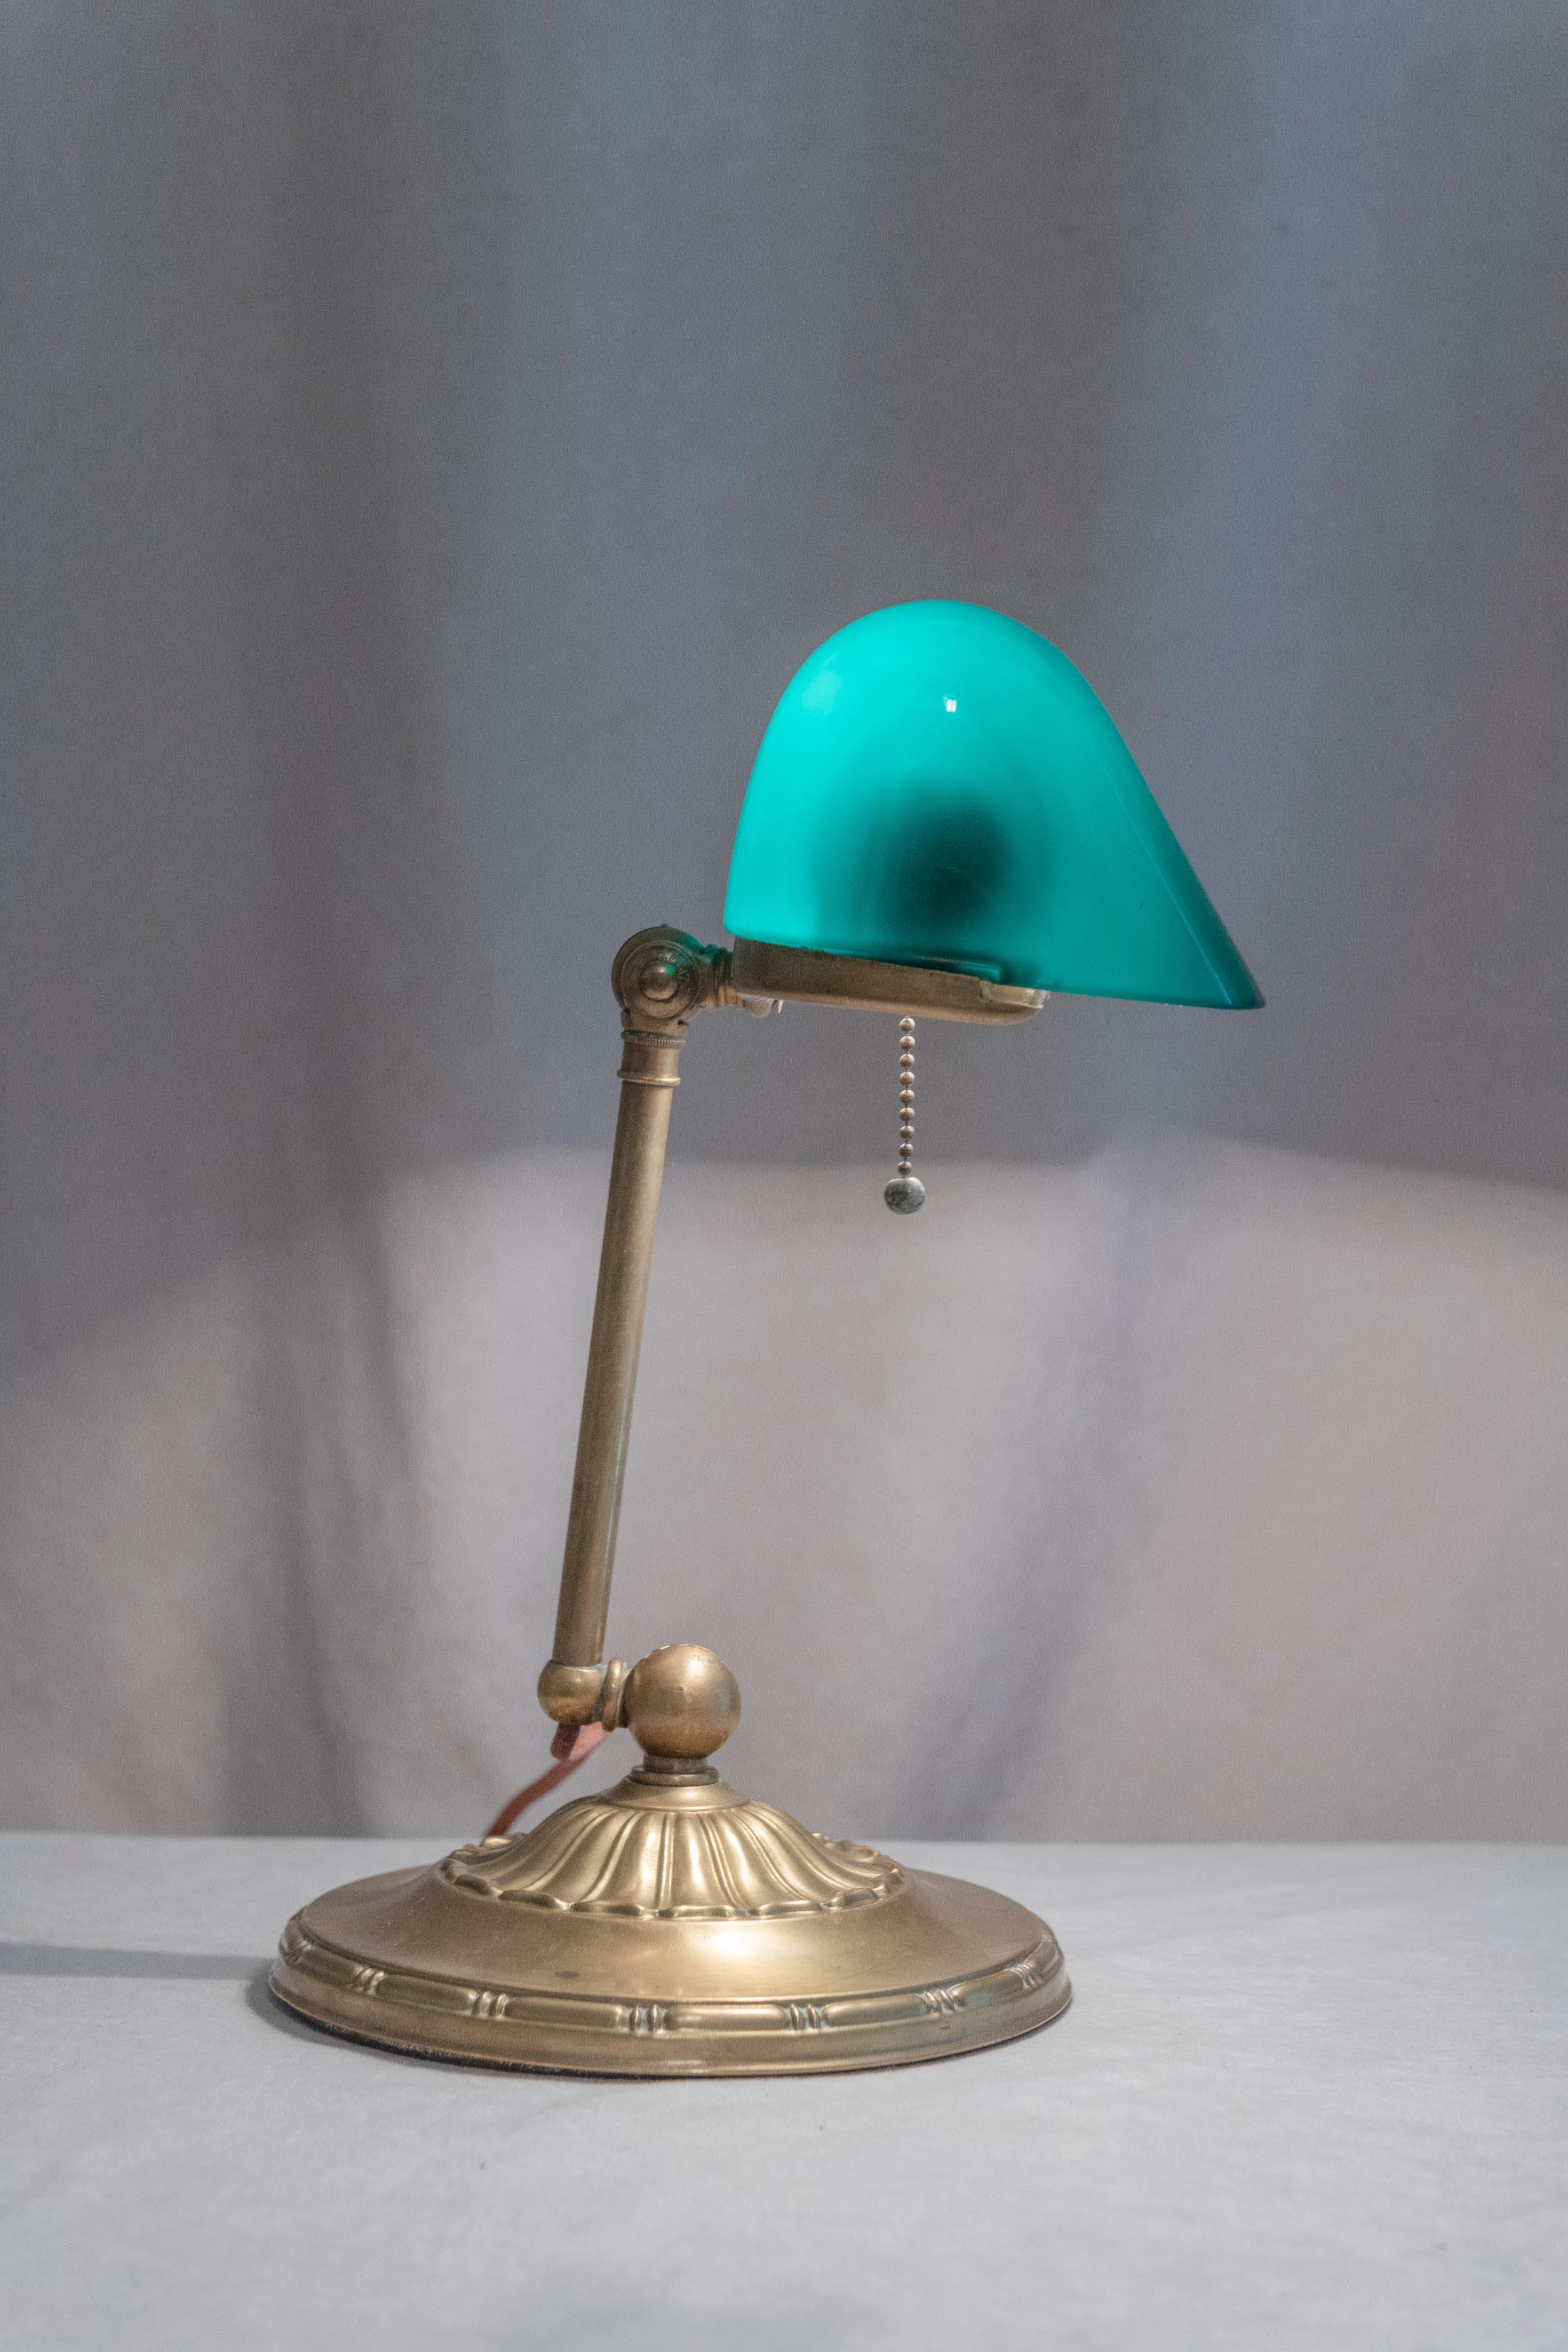  Estas lámparas, que se conocen como lámparas de banquero, son las lámparas antiguas más populares para usar en el escritorio. Emeralite, el fabricante de esta lámpara es, con diferencia, el más conocido. Firmado en el interior de la parte posterior